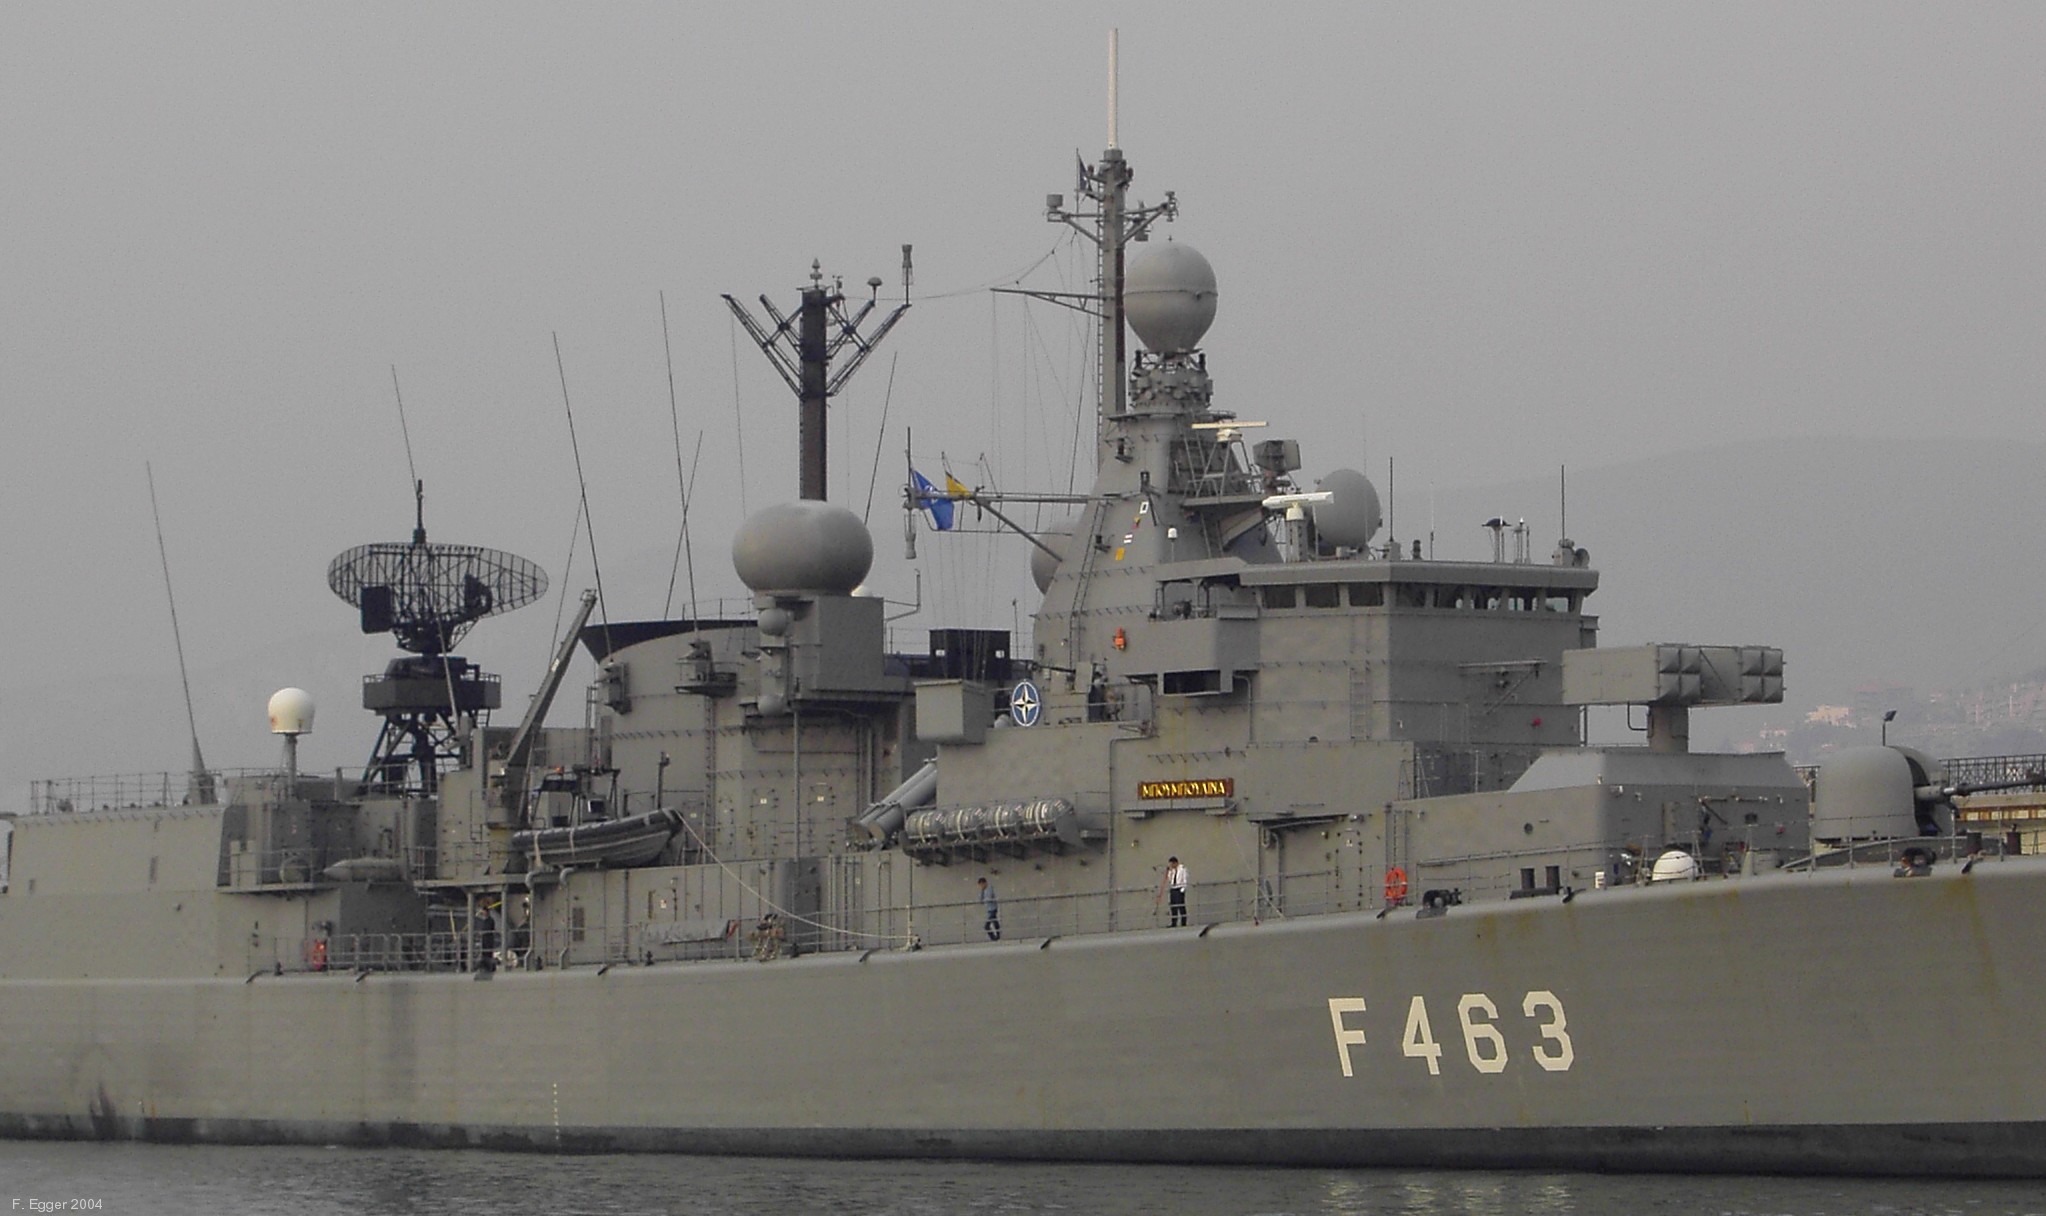 f 463 hs bouboulina elli kortenaer class frigate hellenic navy greece 09